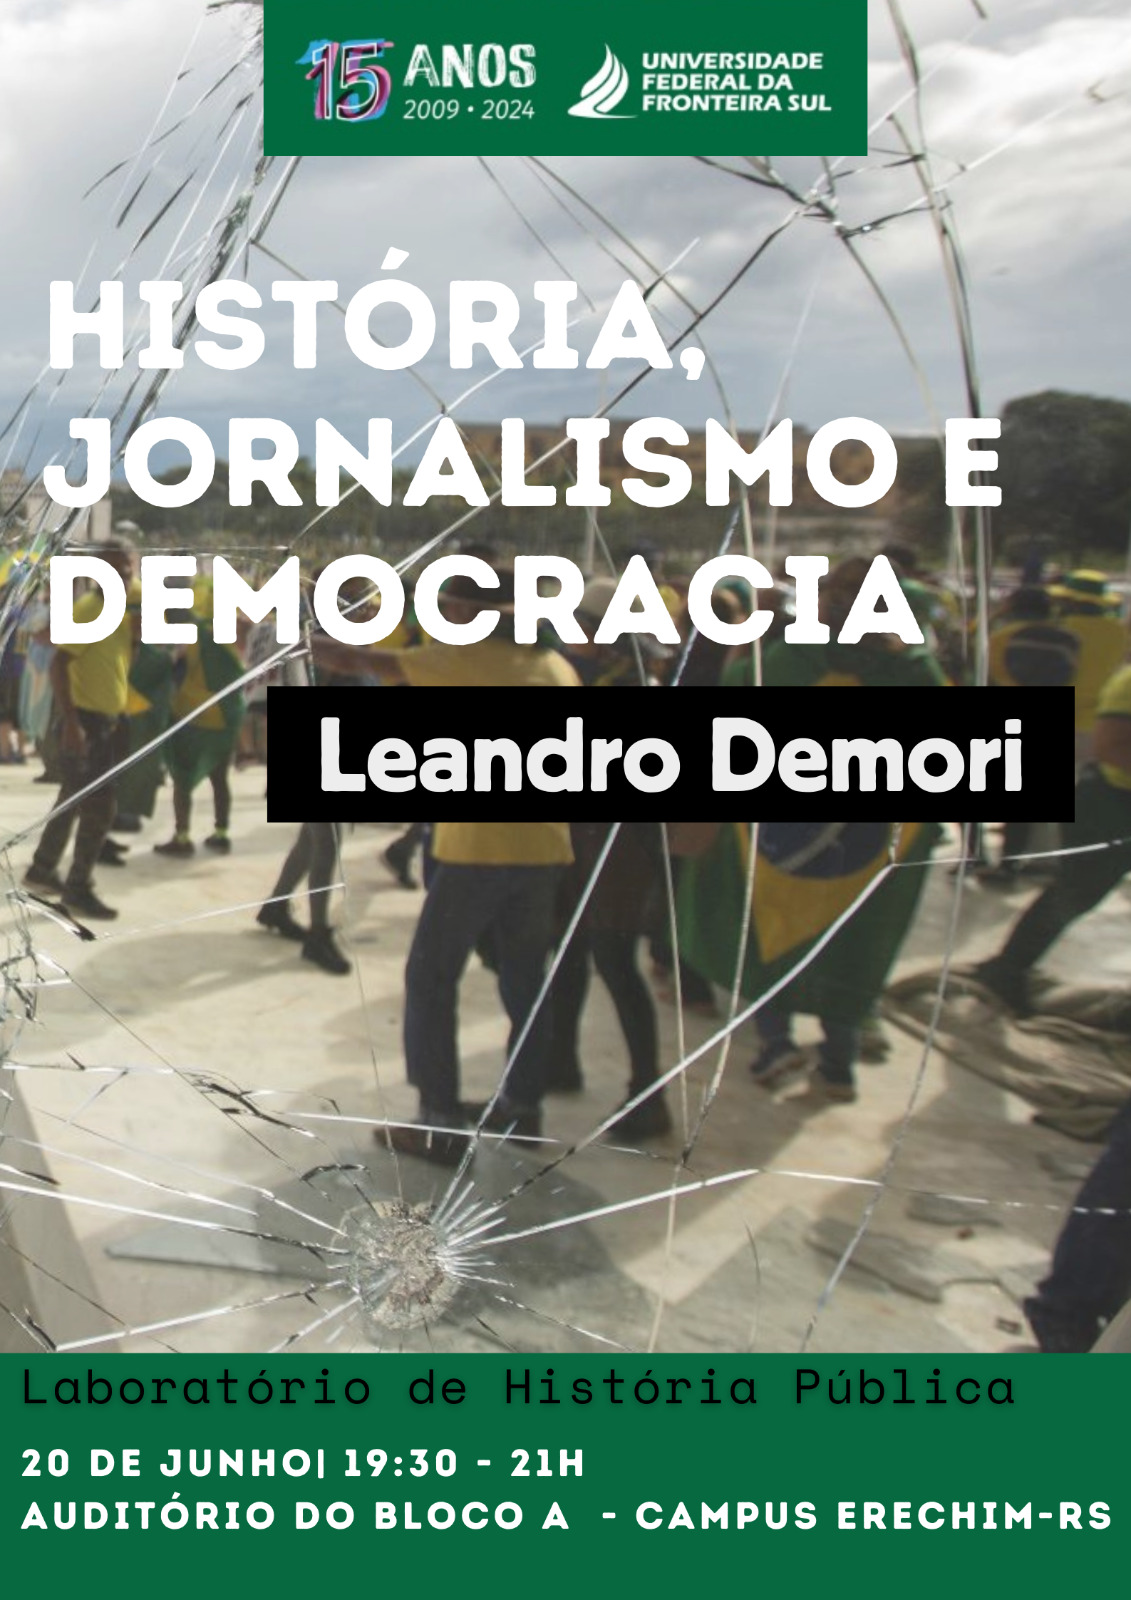 História, jornalismo e democracia - Palestra com Leandro Demori